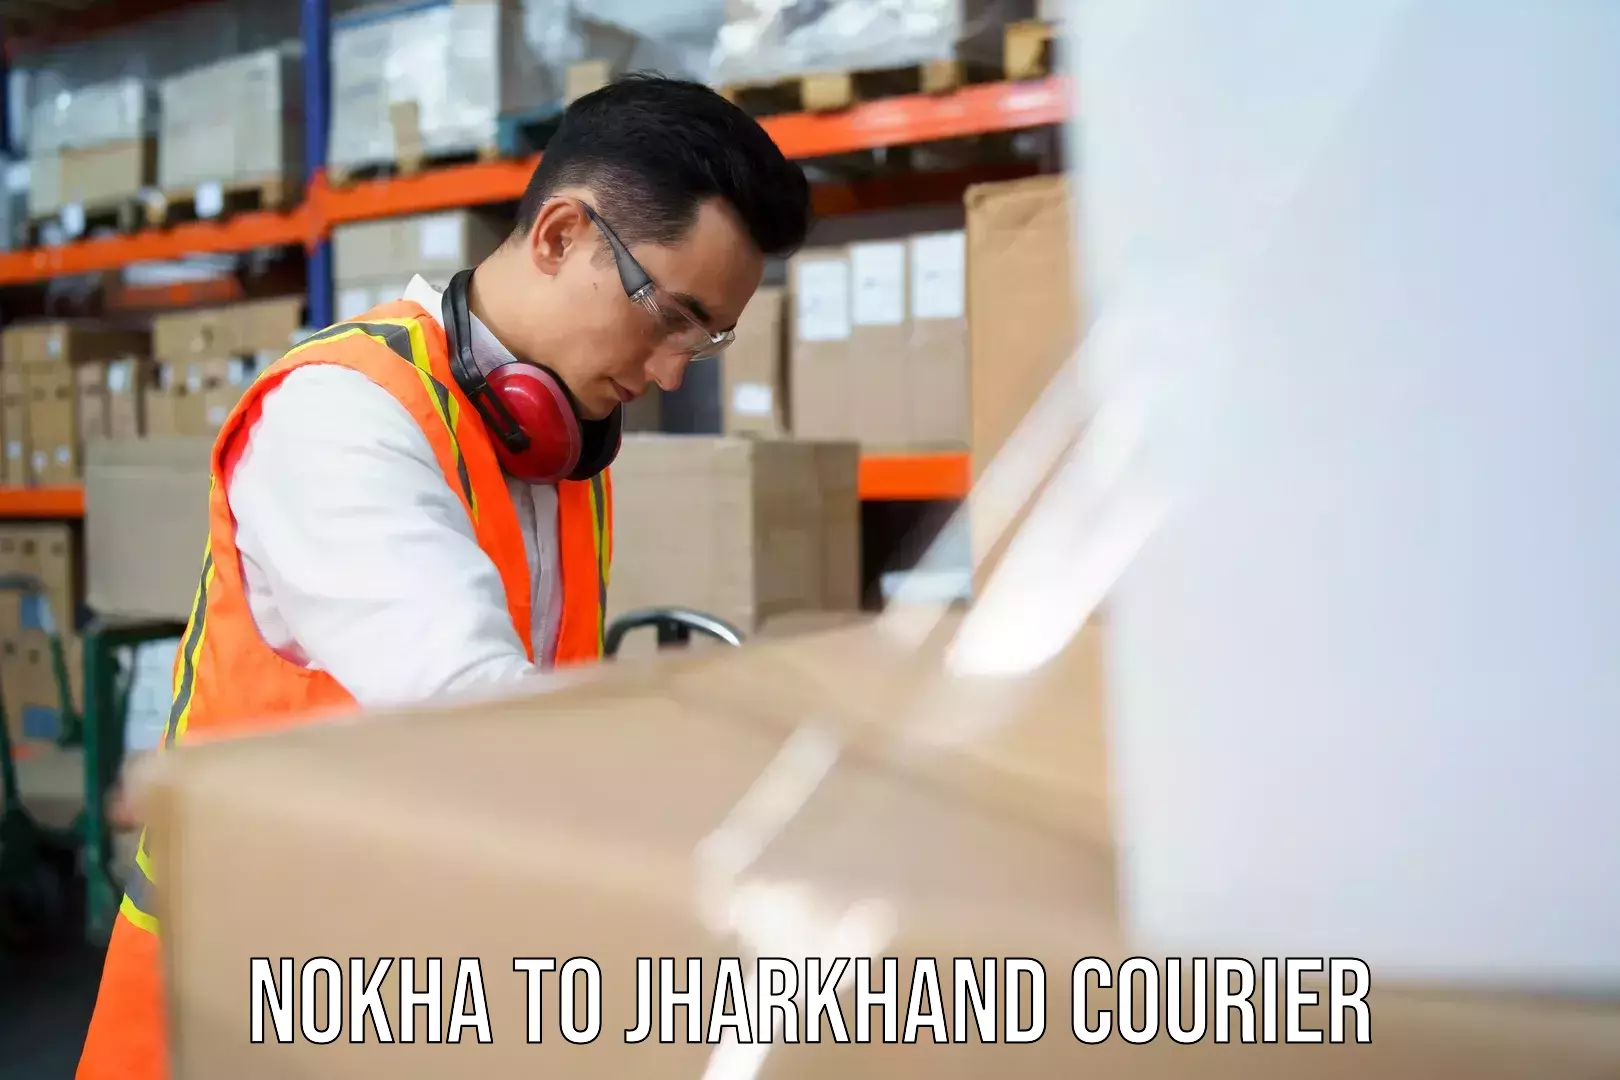 Courier service comparison Nokha to Dumka